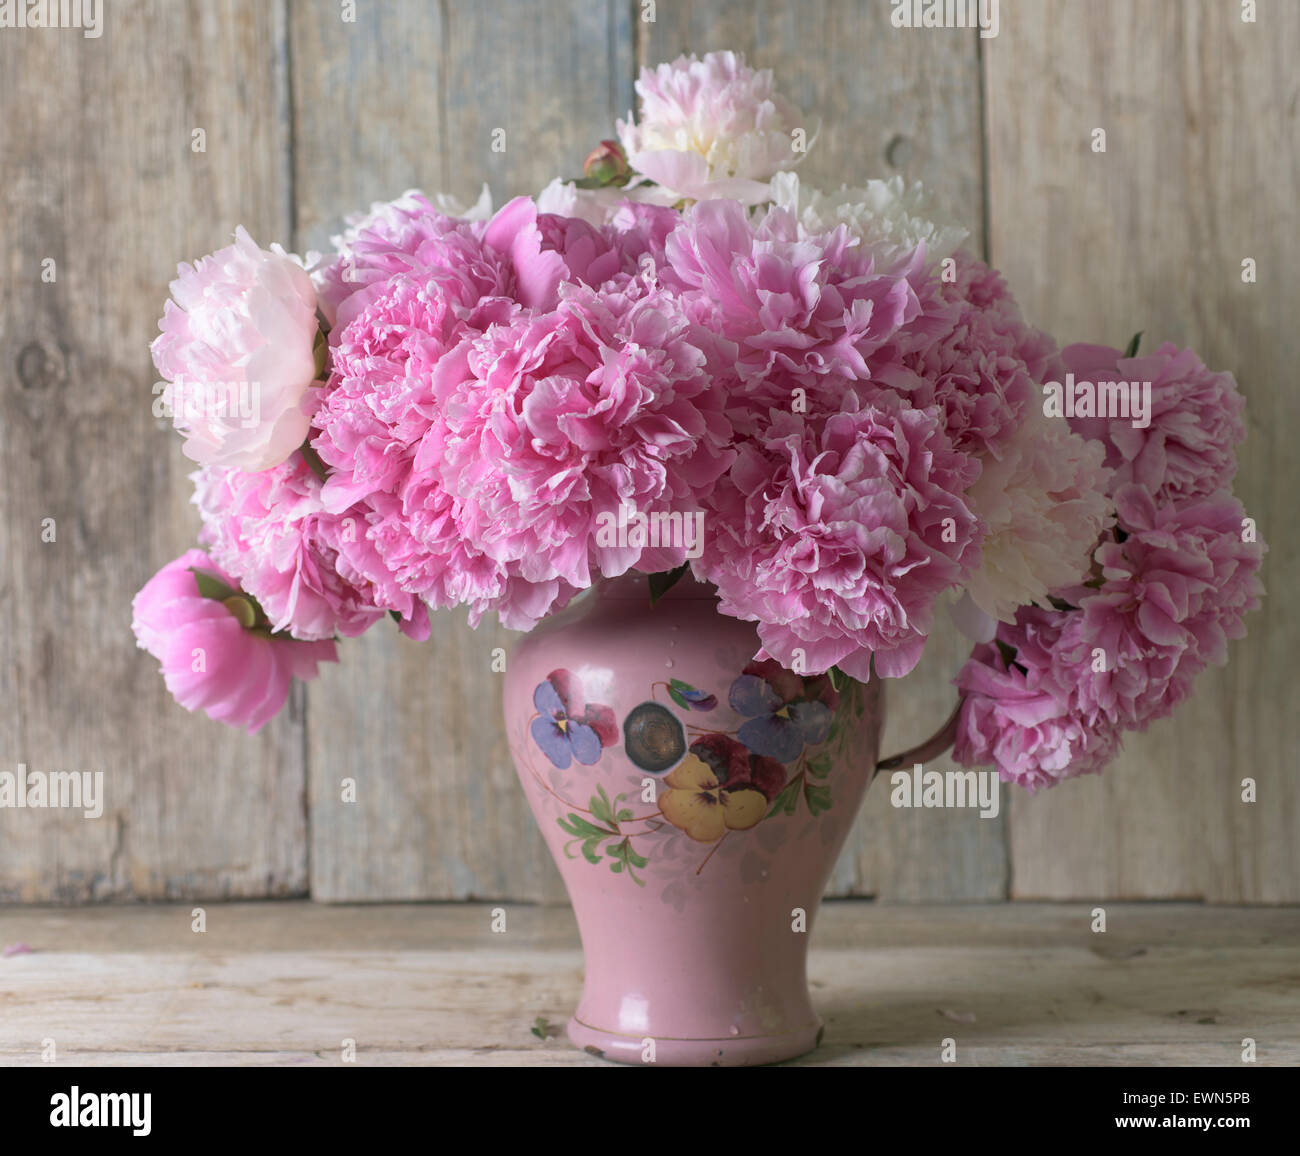 Bouquet de peonías rosadas y blancas mezcladas en el contenedor Foto de stock